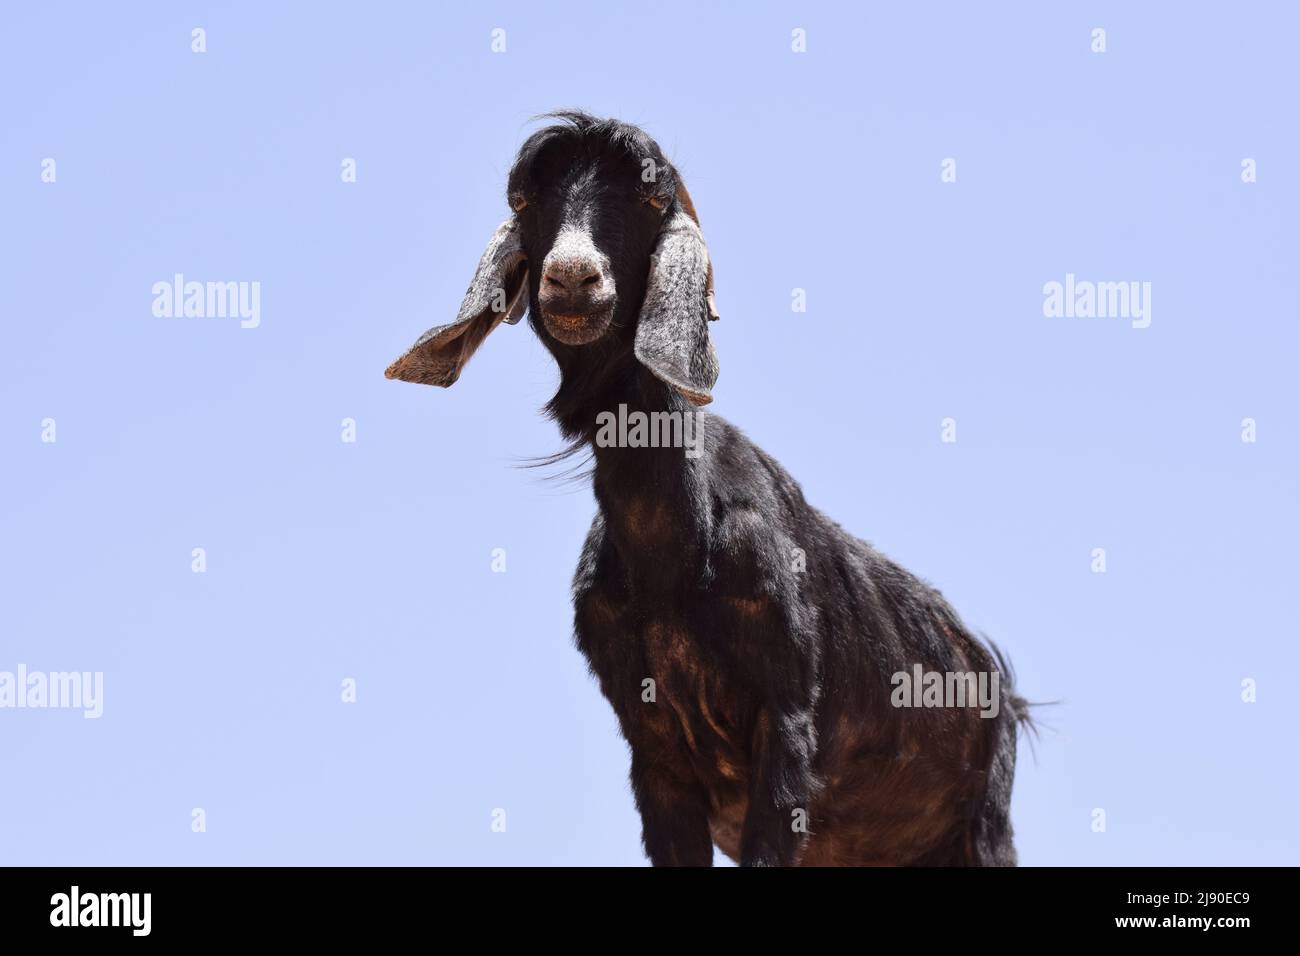 Eine schwarze Ziege mit einer weißen Nase, die auf einem hohen Felsen steht und die grinsende Kamera anschaut Stockfoto